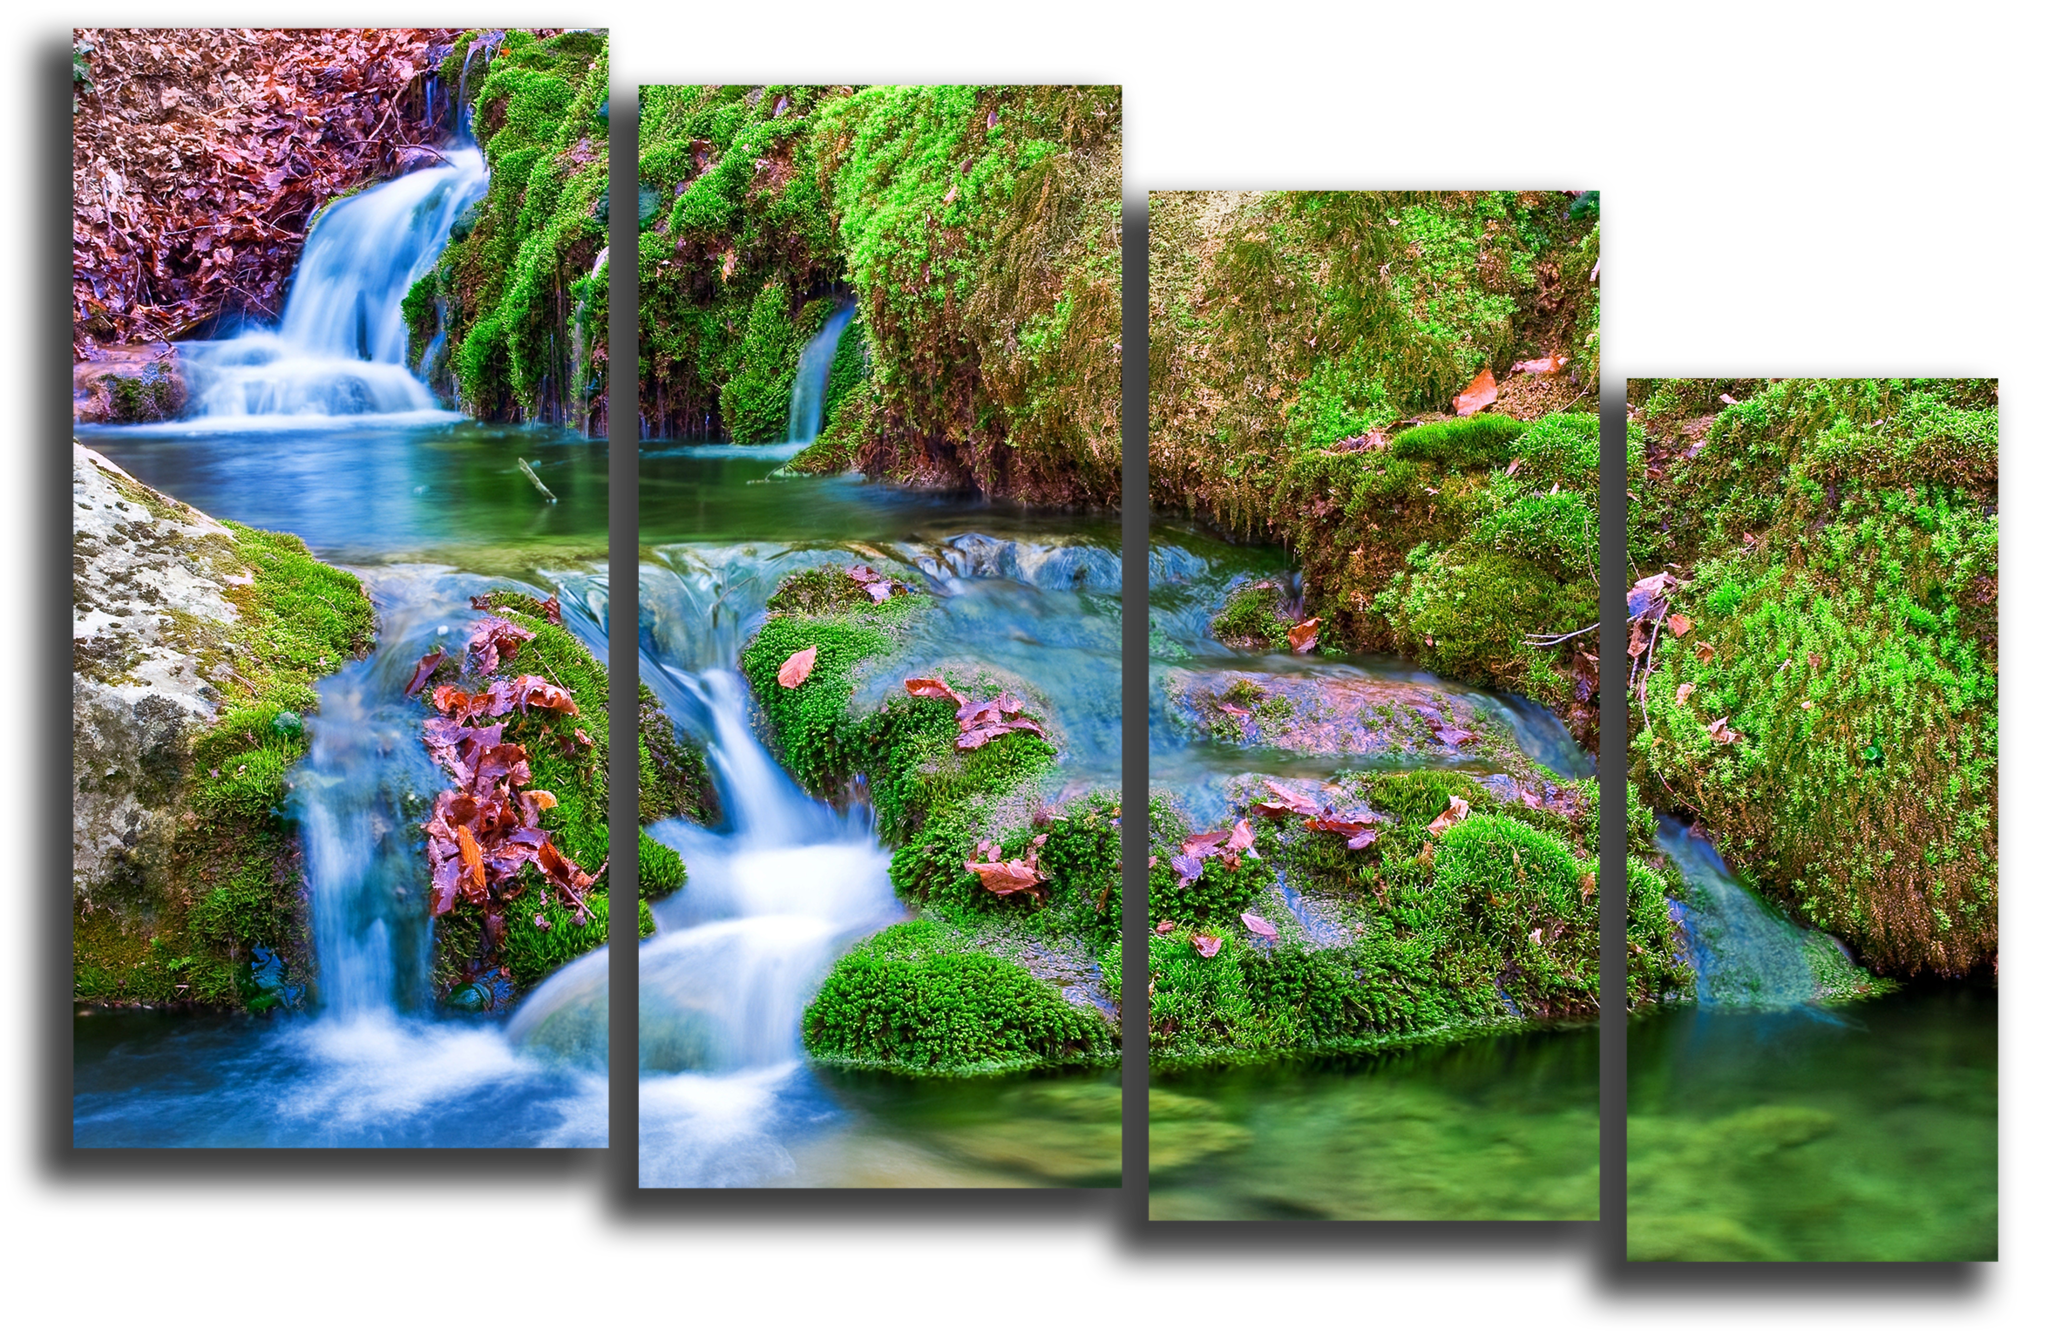 Каталог магазина водопад. Модульная картина водопад. Модульные картины на стену с водопадом. Картина водопад с подсветкой и звуками природы. Модульная картина водопад в интерьере.